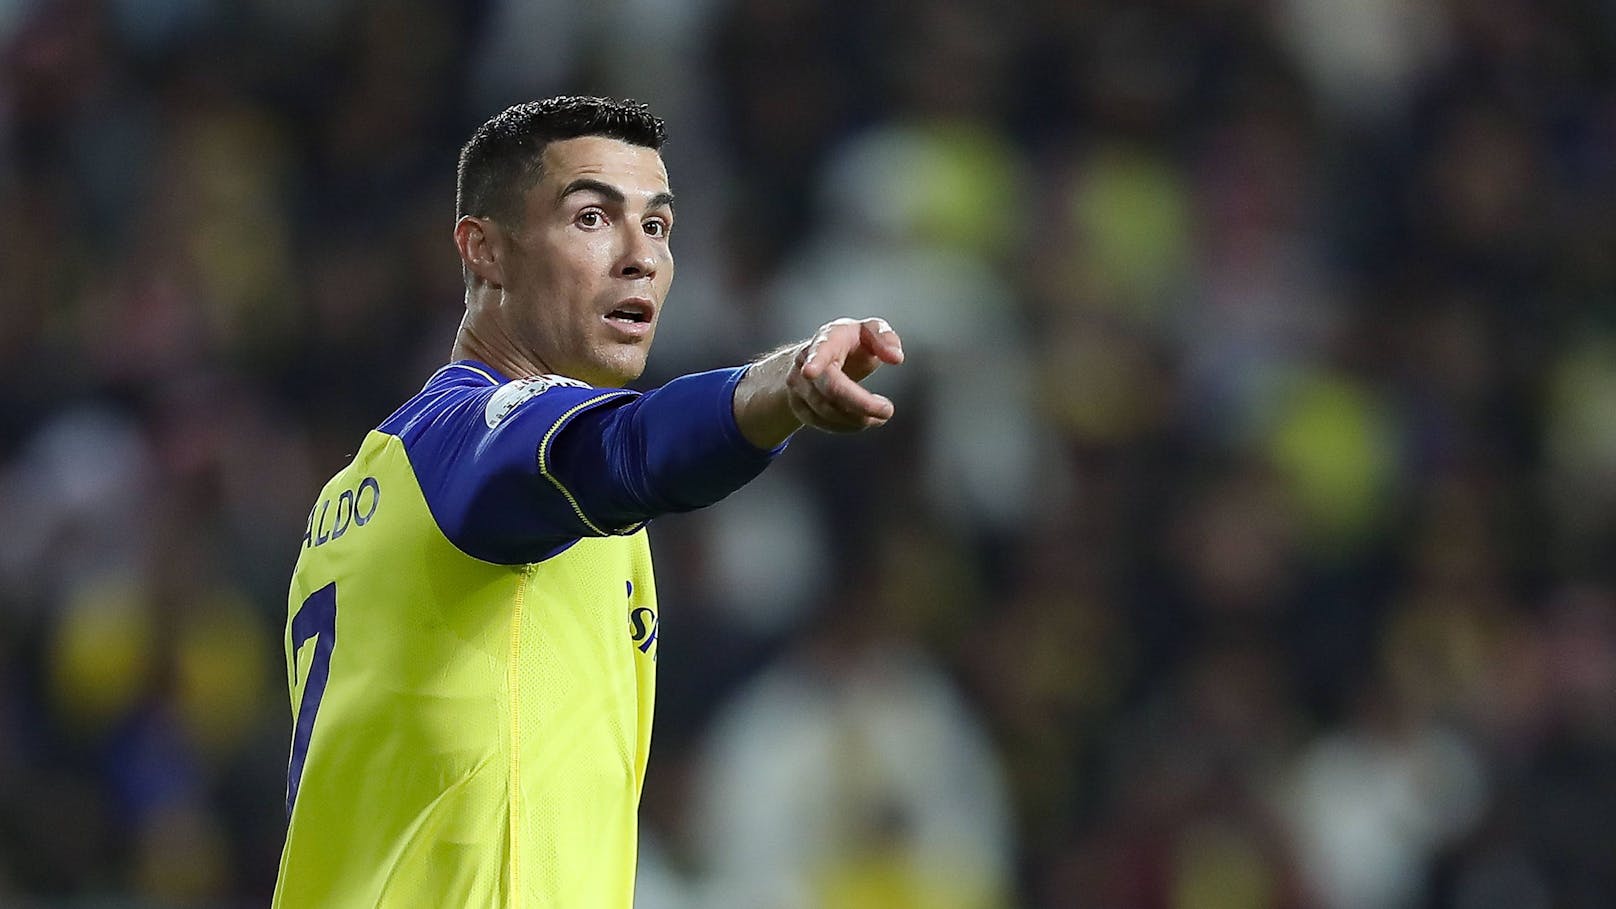 Fußball-Star Cristiano Ronaldo im neuen Al-Nassr-Trikot